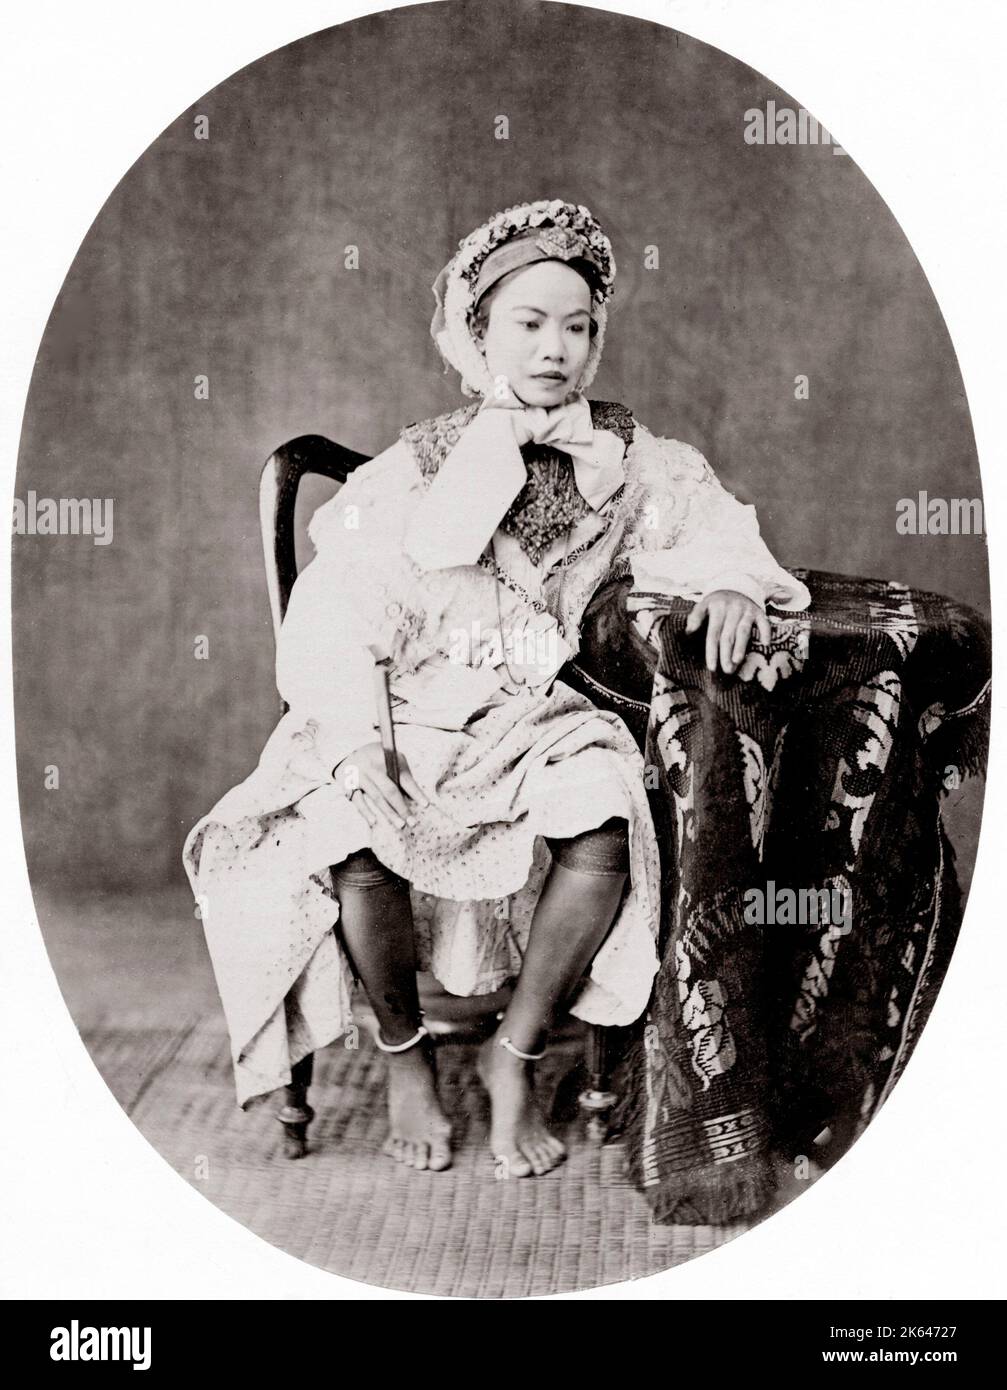 1880 Asia sud-orientale - Thailandia, Siam, Regina, principessa, membro della famiglia reale, forse una moglie del re Mongkut Foto Stock